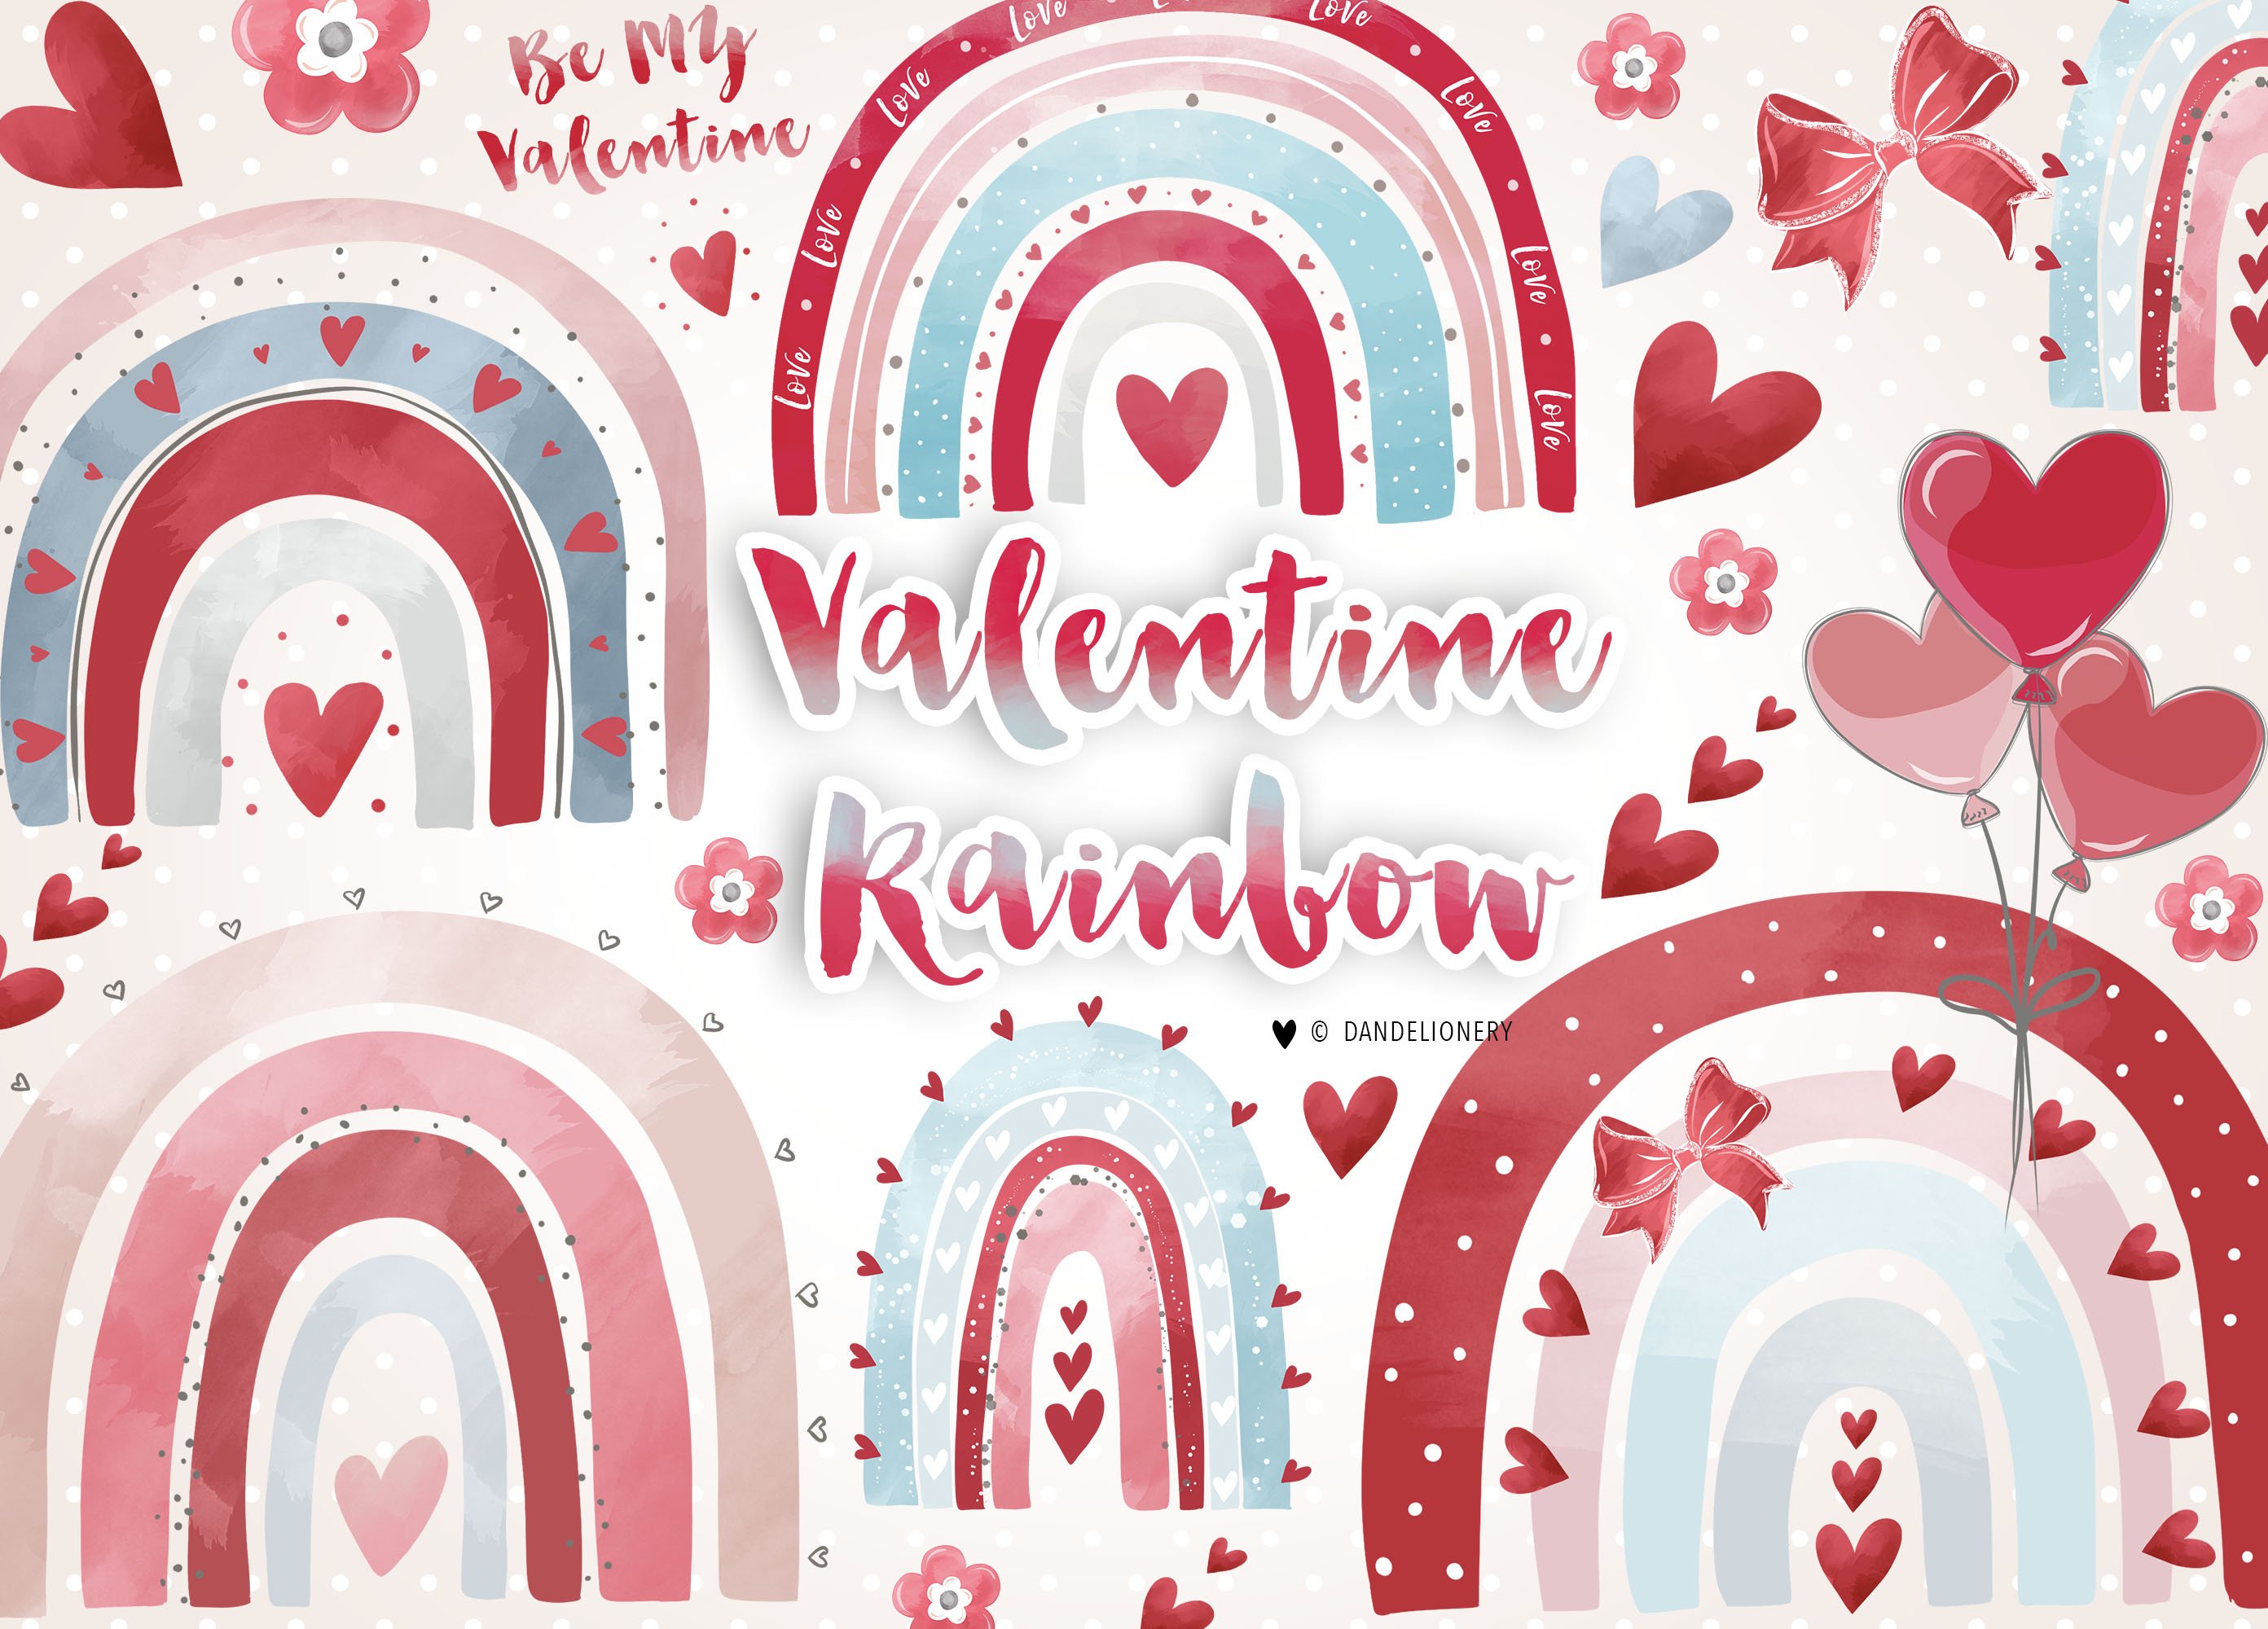 Valentine Rainbow cover image.